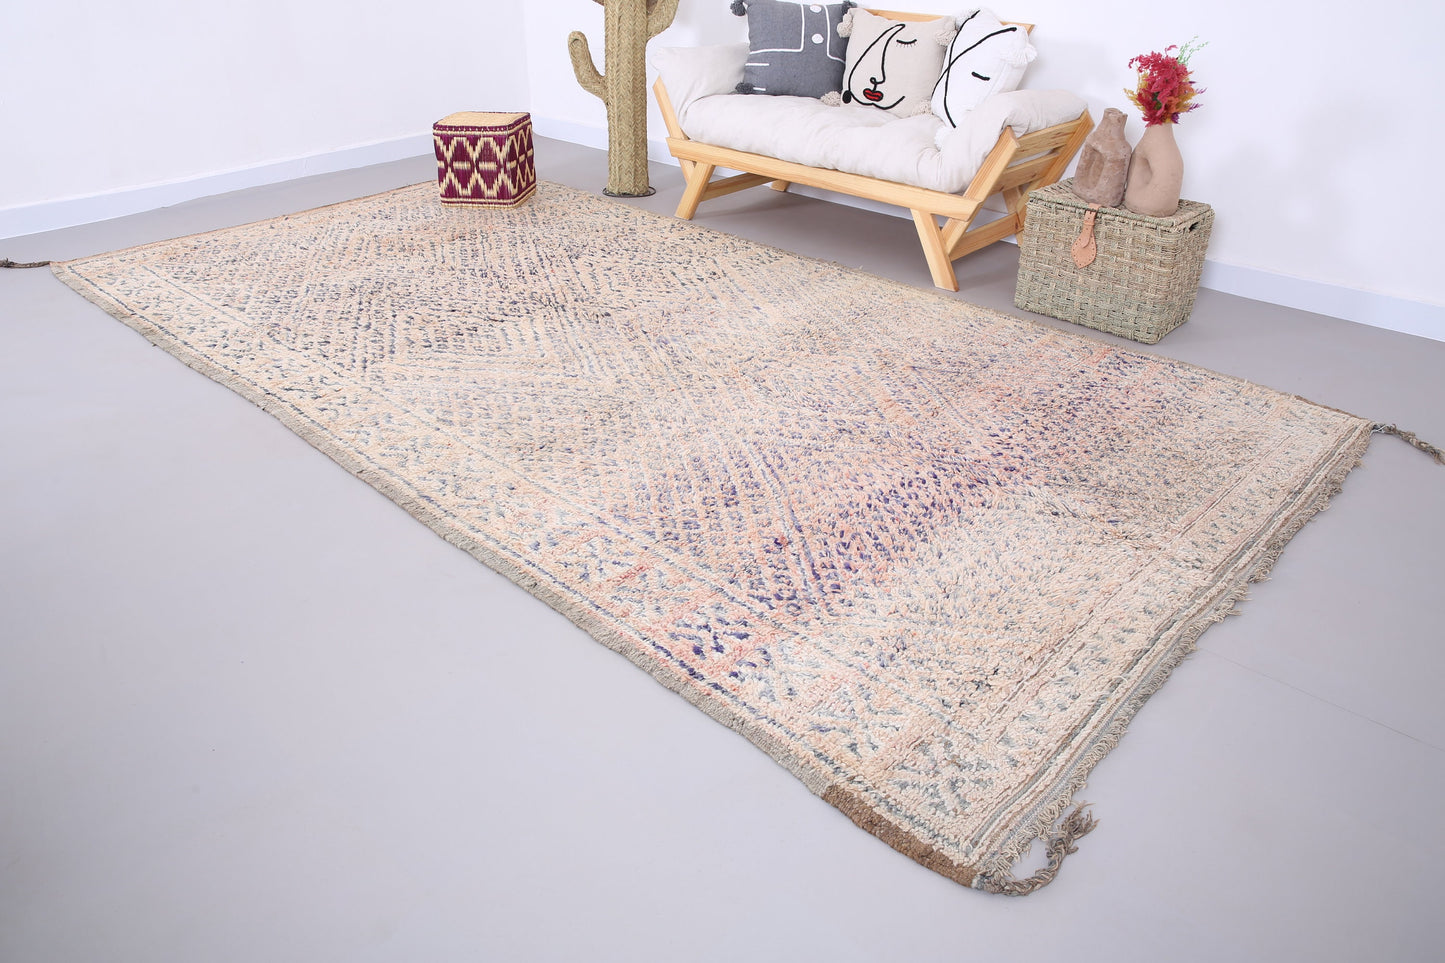 Großer blasser Beni Mguild Teppich 6,4 FT x 12,5 FT - marokkanischer Vintage Teppich - handgemachter Tribal Teppich - alter Boho Teppich - marokkanischer Berberteppich - 70er Jahre Teppich